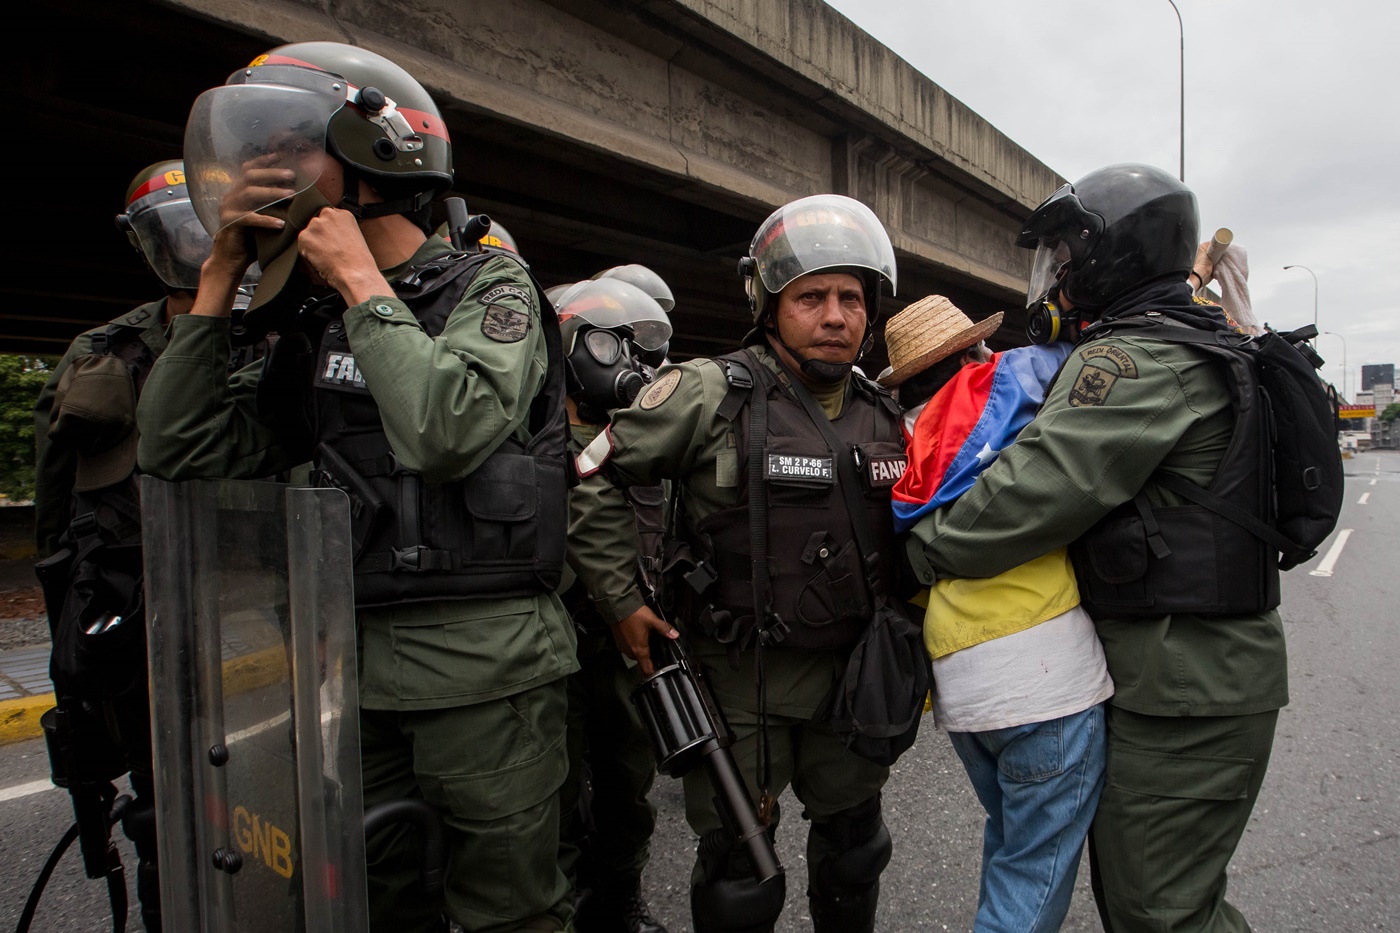 CAR012. CARACAS (VENEZUELA), 03/05/2017 - Militares retiran a una mujer que bloqueaba el paso de una tanqueta de la Guardia Nacional durante una manifestación encabezada por diputados opositores hoy, miércoles 3 de mayo de 2017, en Caracas (Venezuela). La Guardia Nacional Bolivariana (GNB, policía militarizada) de Venezuela dispersó hoy con gases lacrimógenos una movilización opositora en el este de Caracas que pretendía llegar hasta la sede de la Asamblea Nacional (AN, Parlamento), ubicada en el centro de la capital. EFE/MIGUEL GUTIERREZ